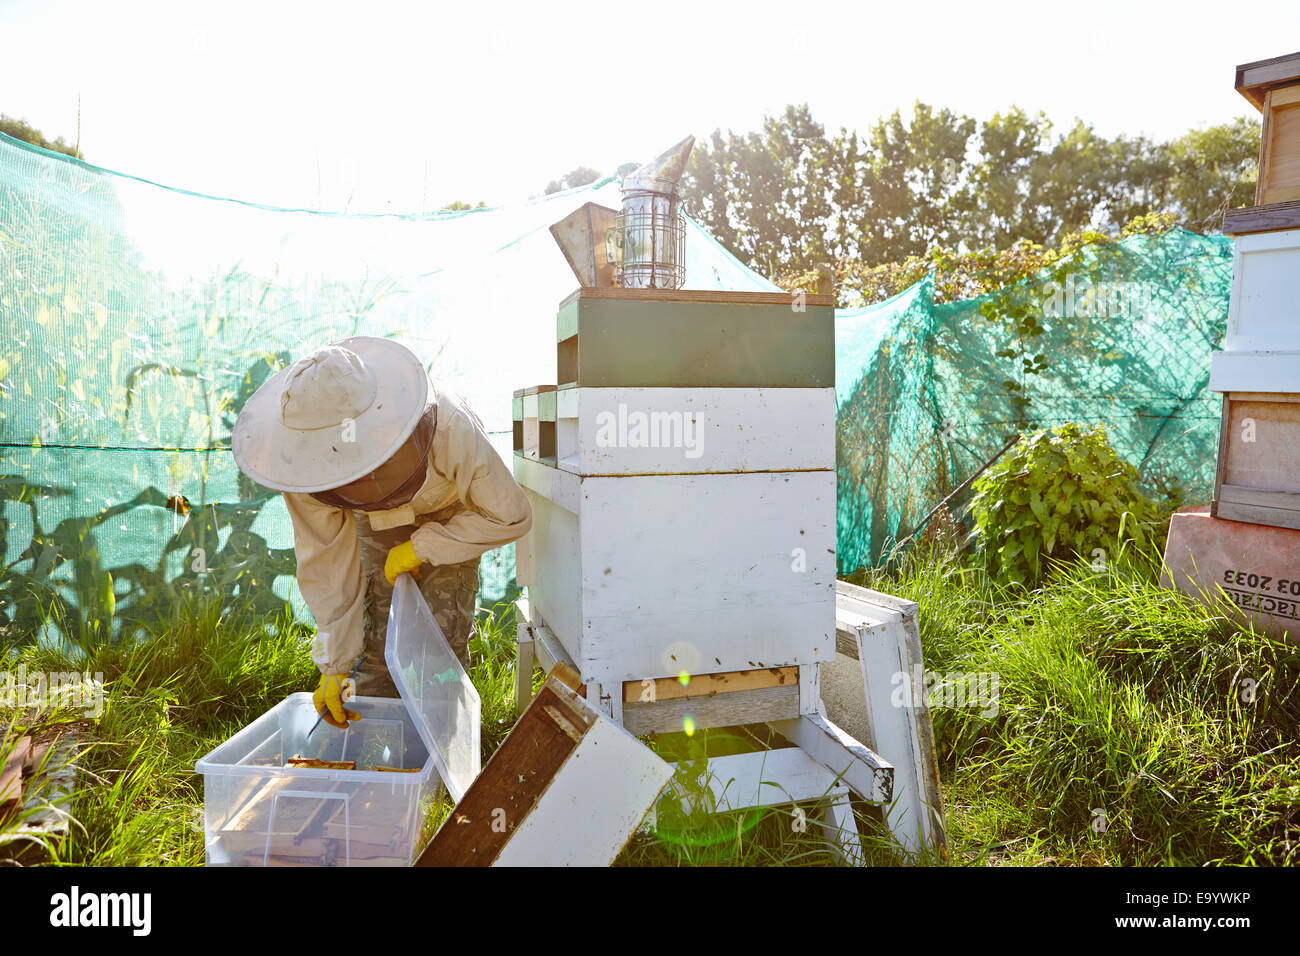 Apicoltore femminile mettendo i vassoi a nido d'ape in contenitore di plastica sulla città di assegnazione Foto Stock